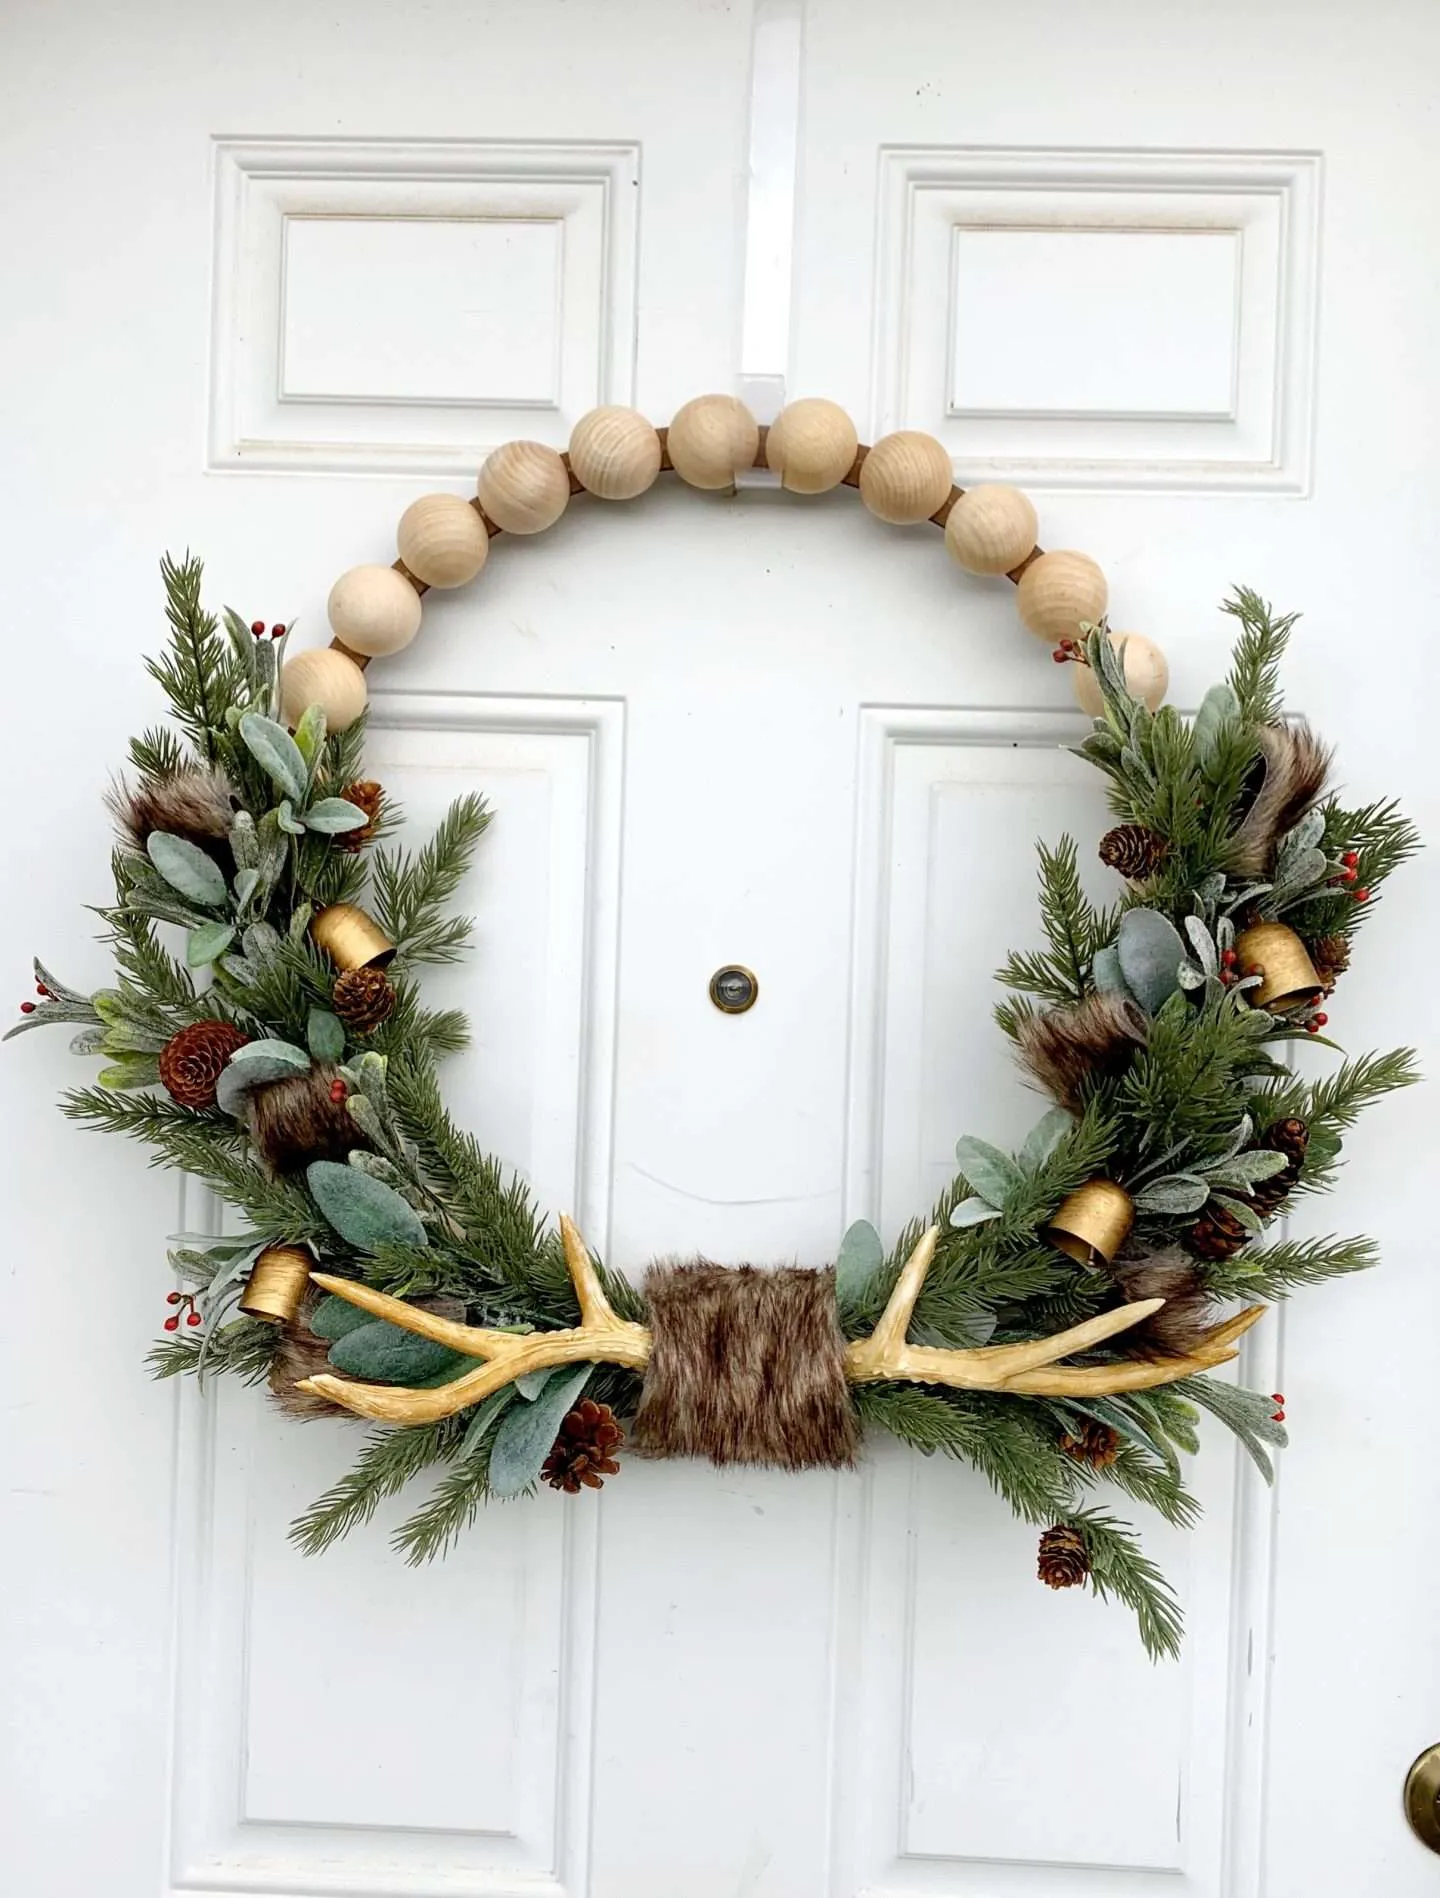 Wood Bead Christmas Wreath with antlers DIY Tutorial